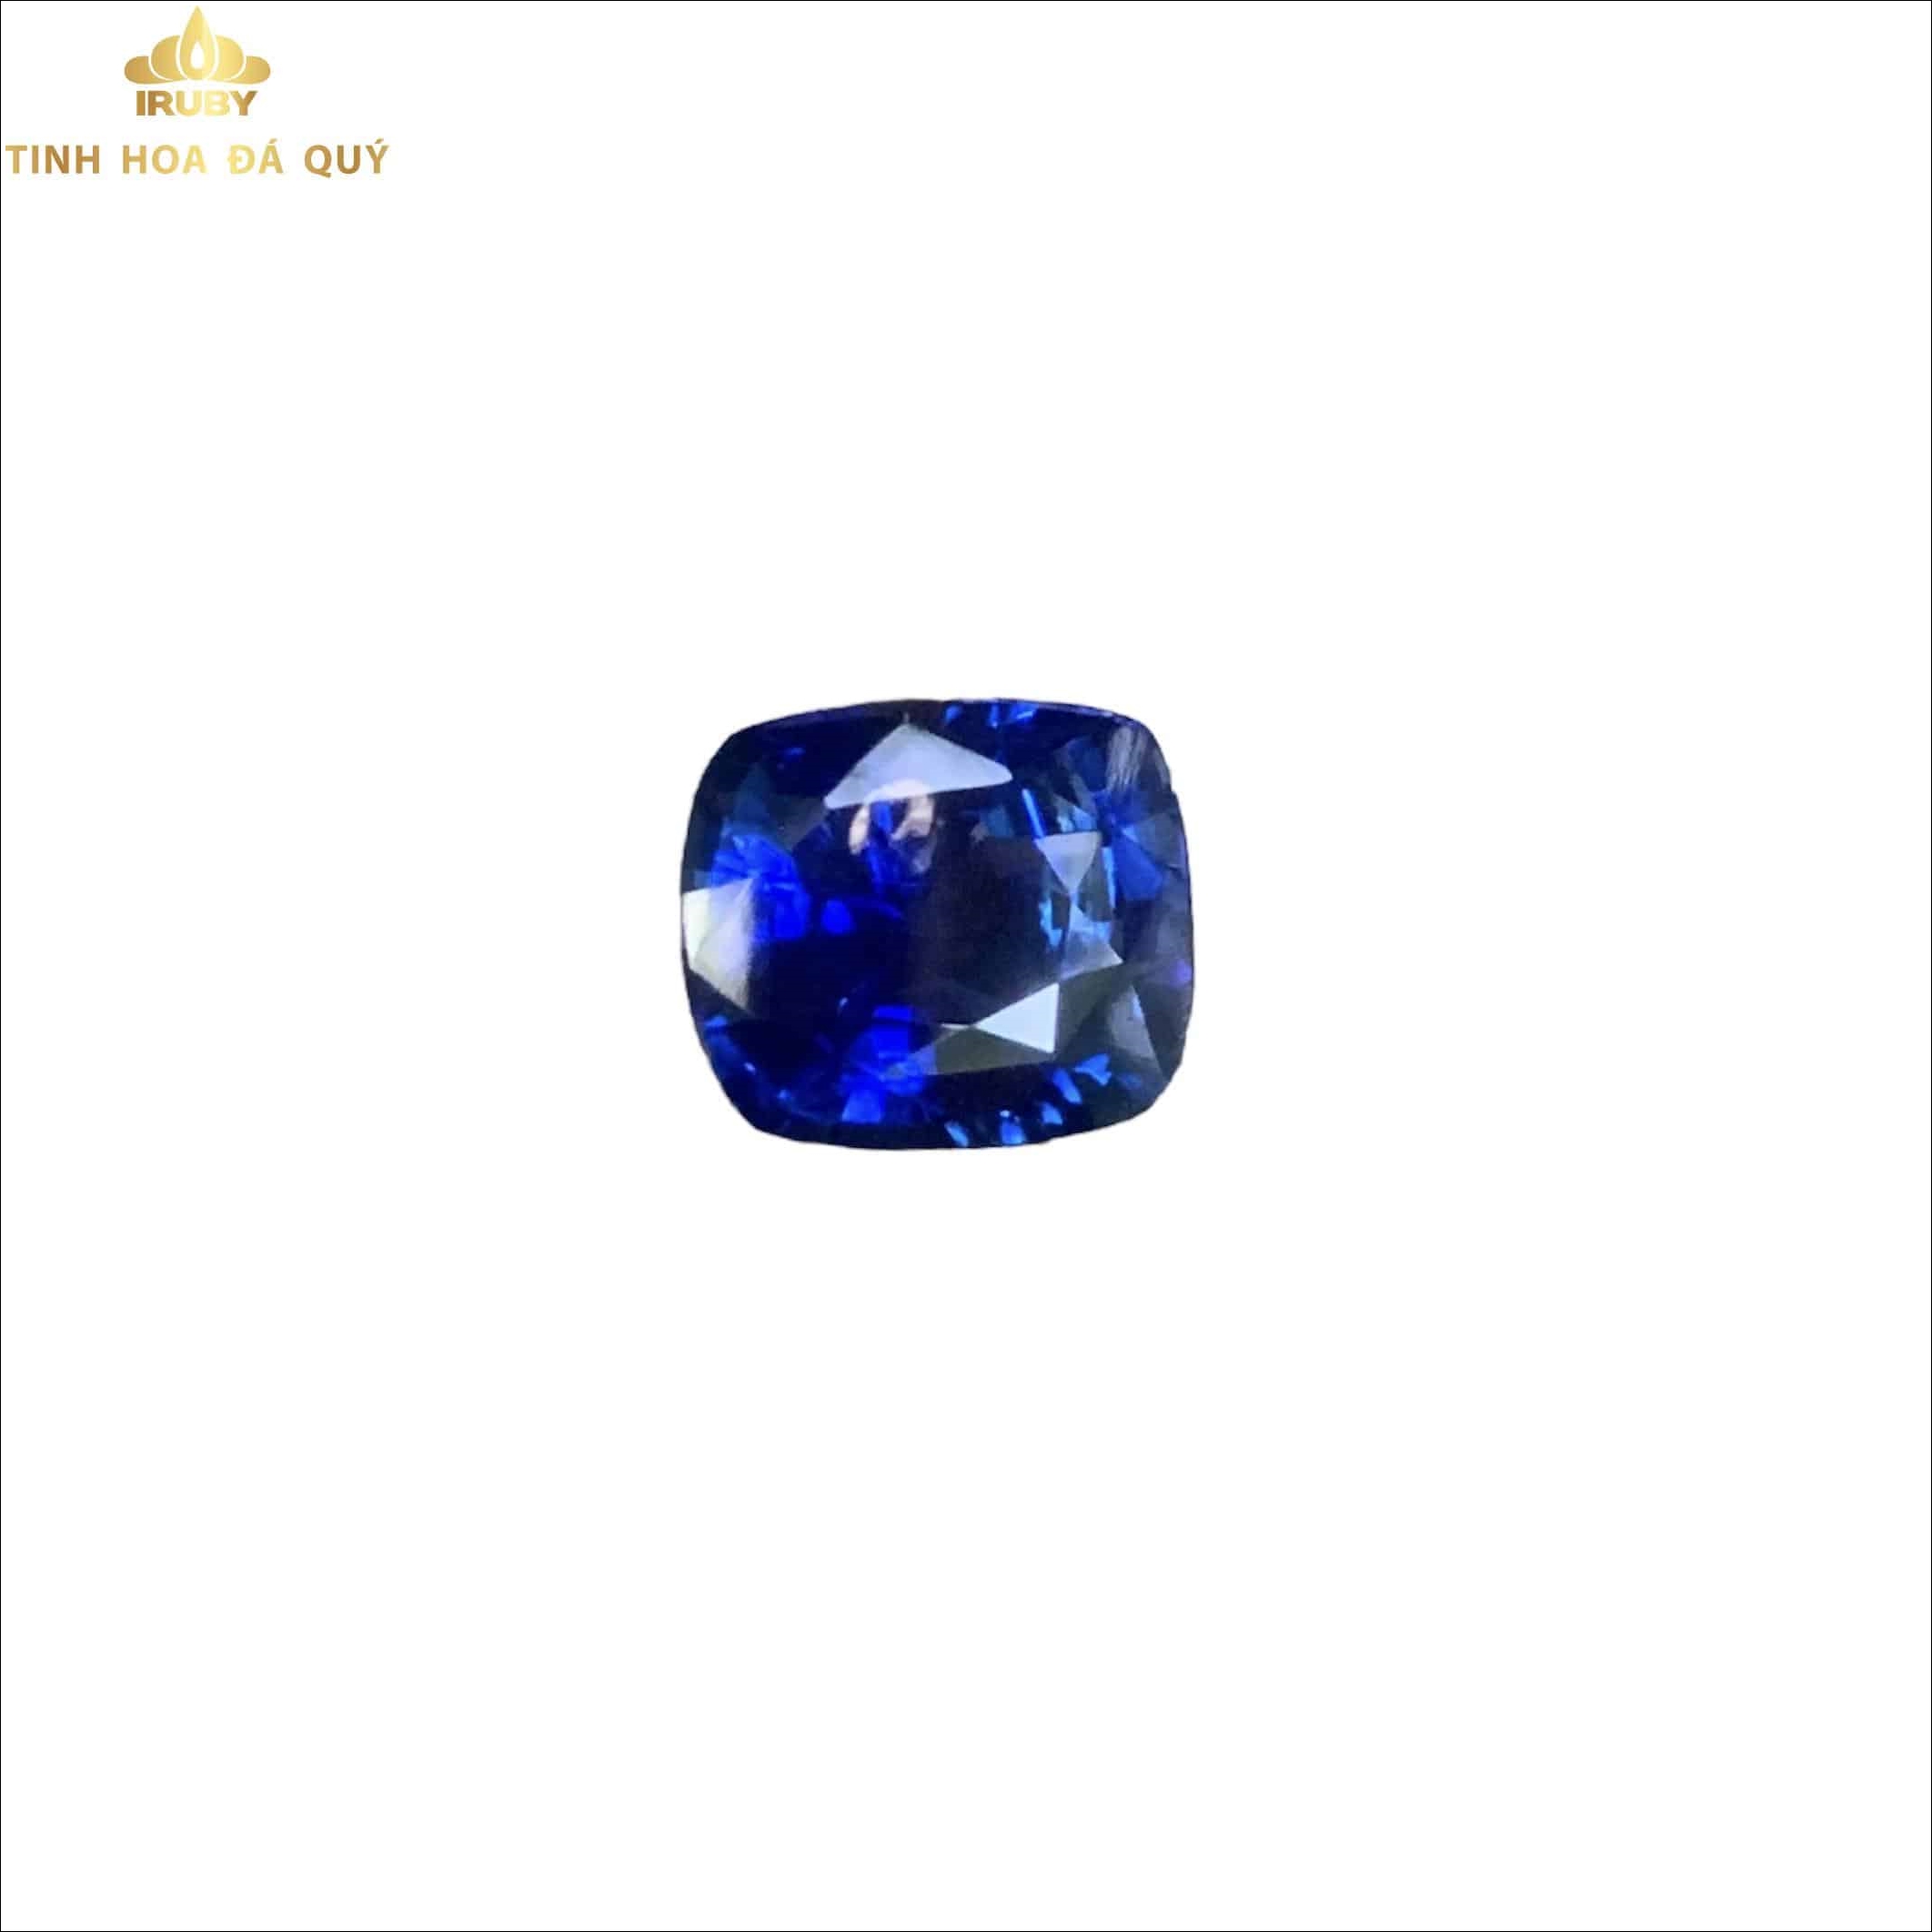 Viên Sapphire xanh lam Hoàng Gia 3,6ct – IRBS 221136